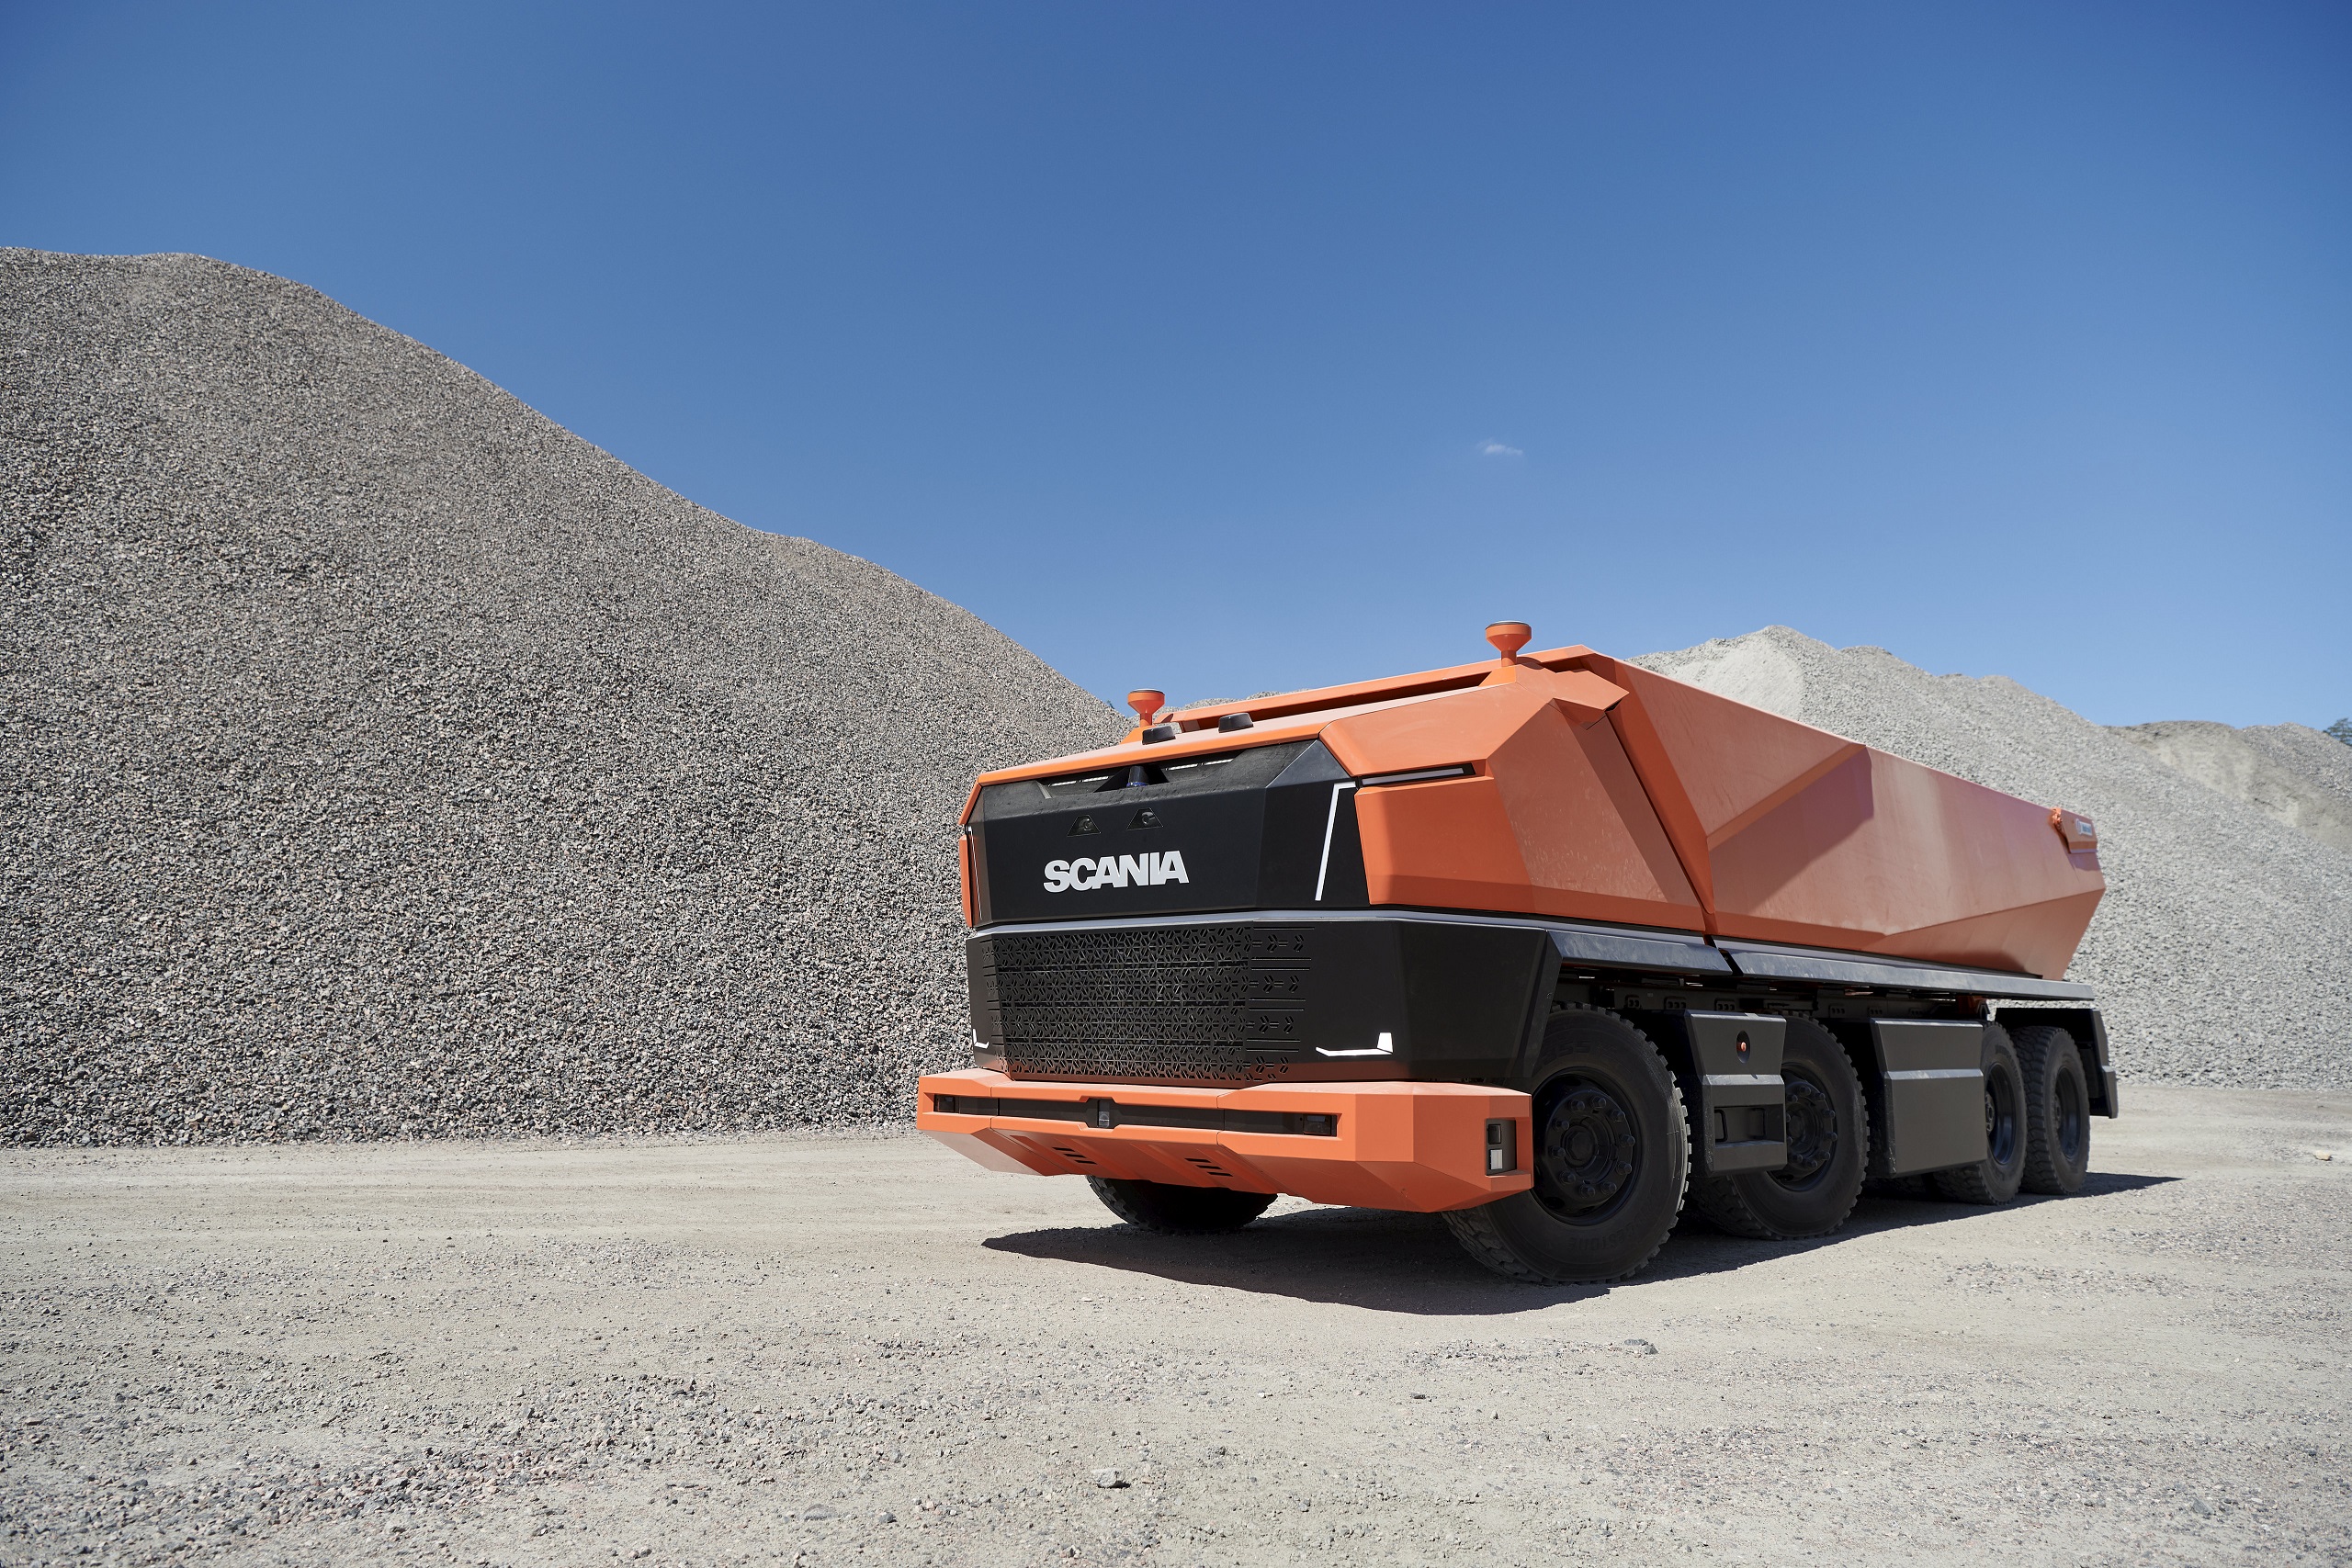 Camion: guida autonoma senza cabina, Scania lancia Axl